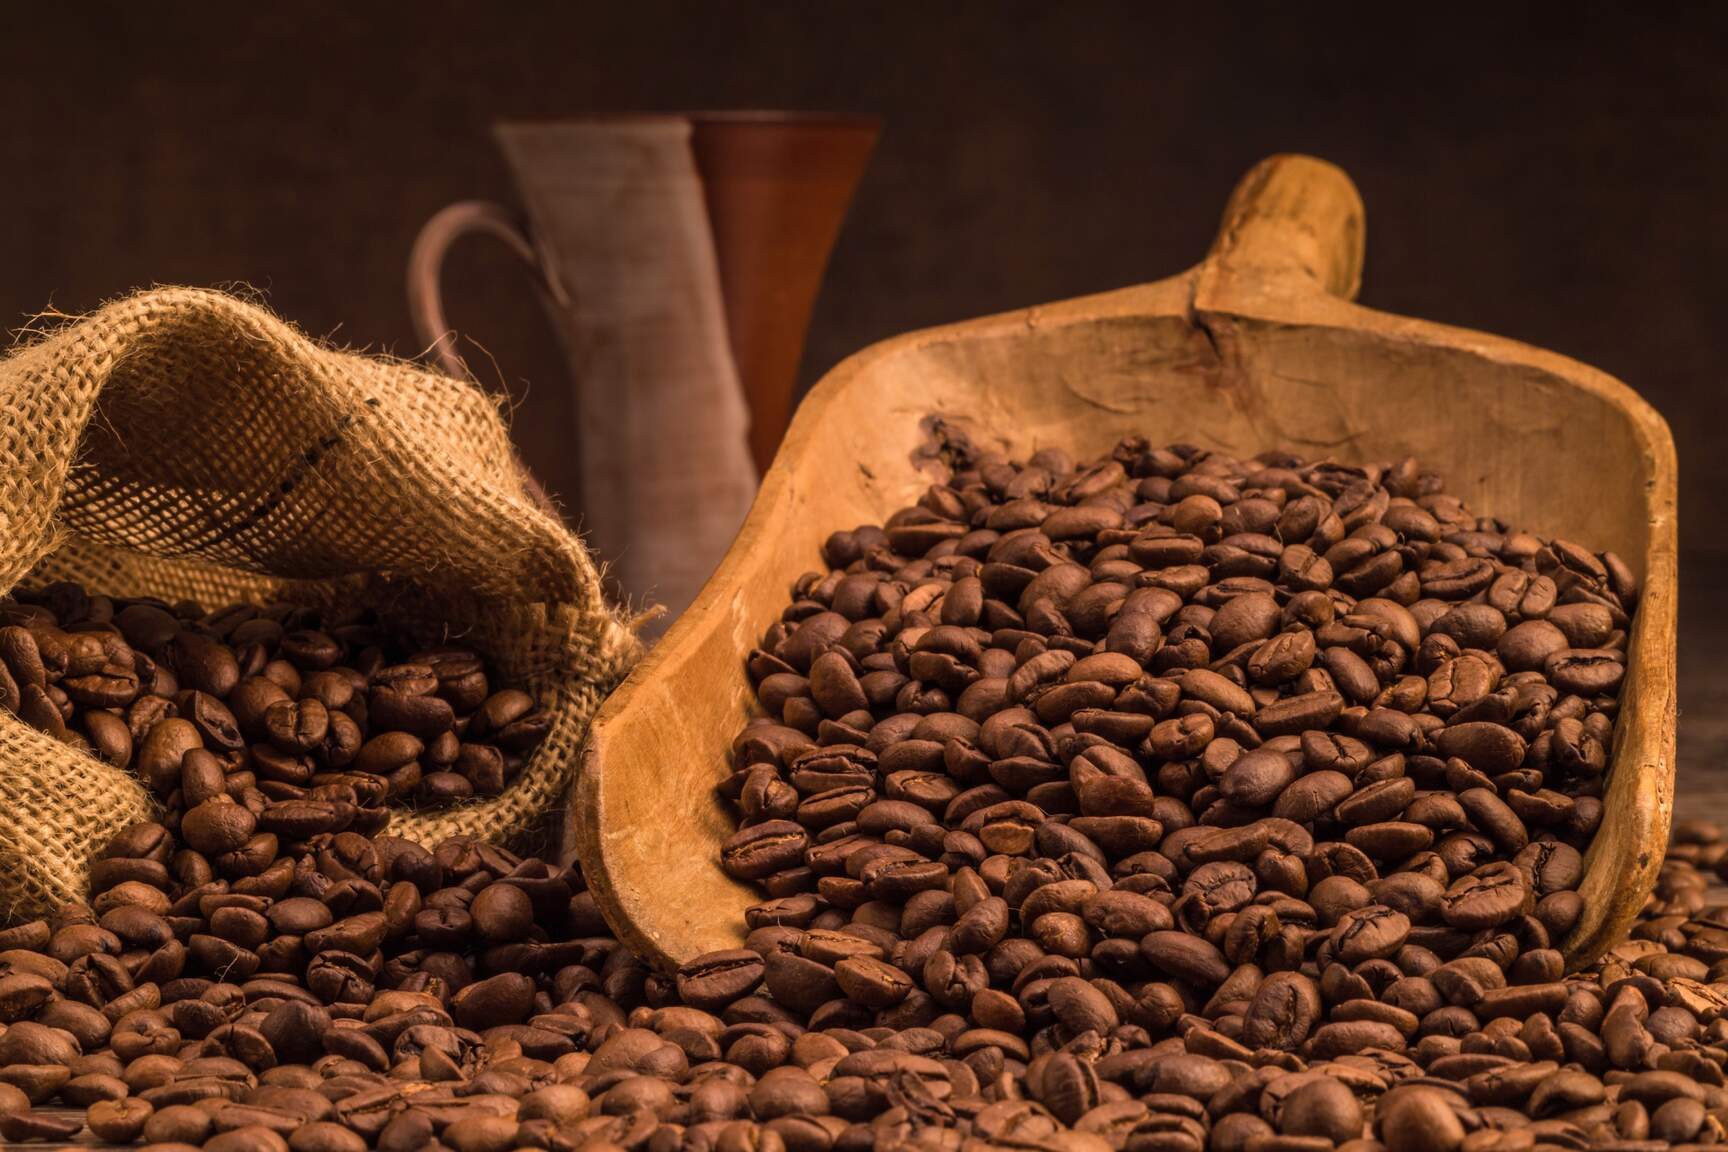 Los estadounidenses consumen 400 millones de tazas de café al día